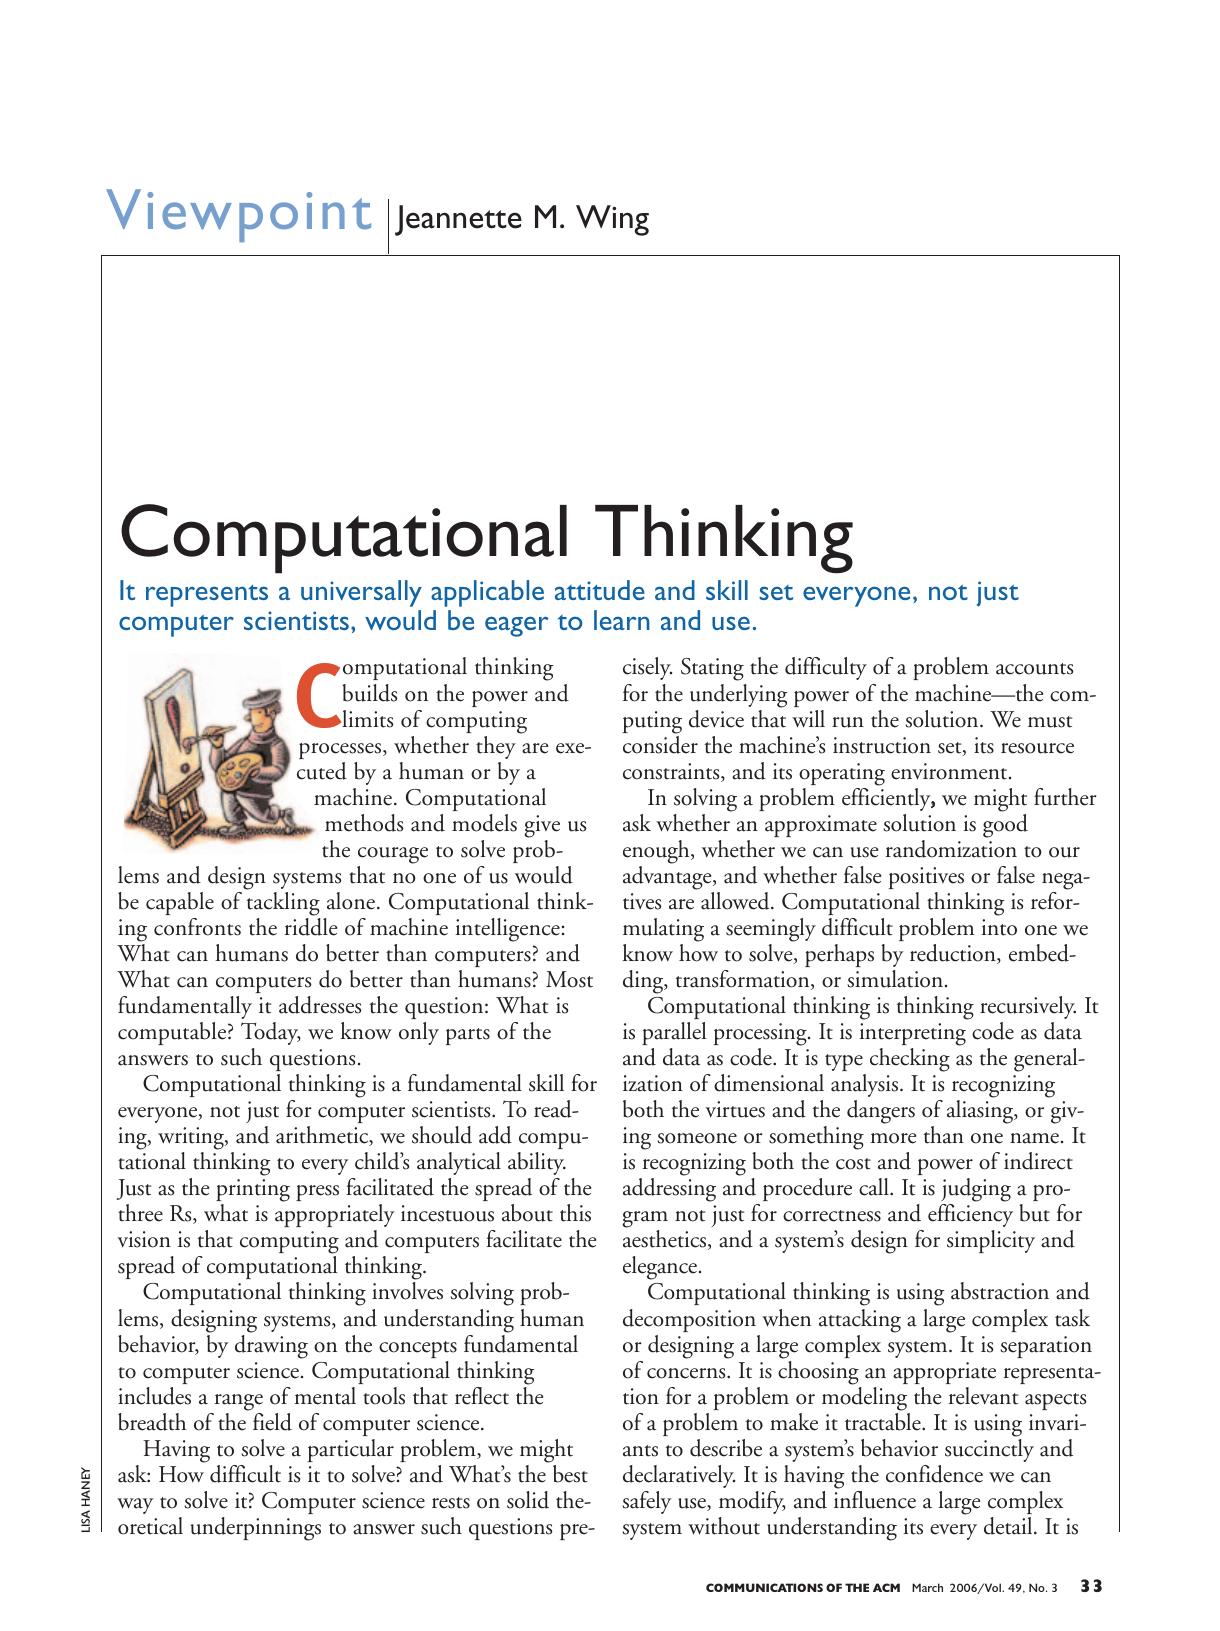 COMPUTATIONAL THINKING